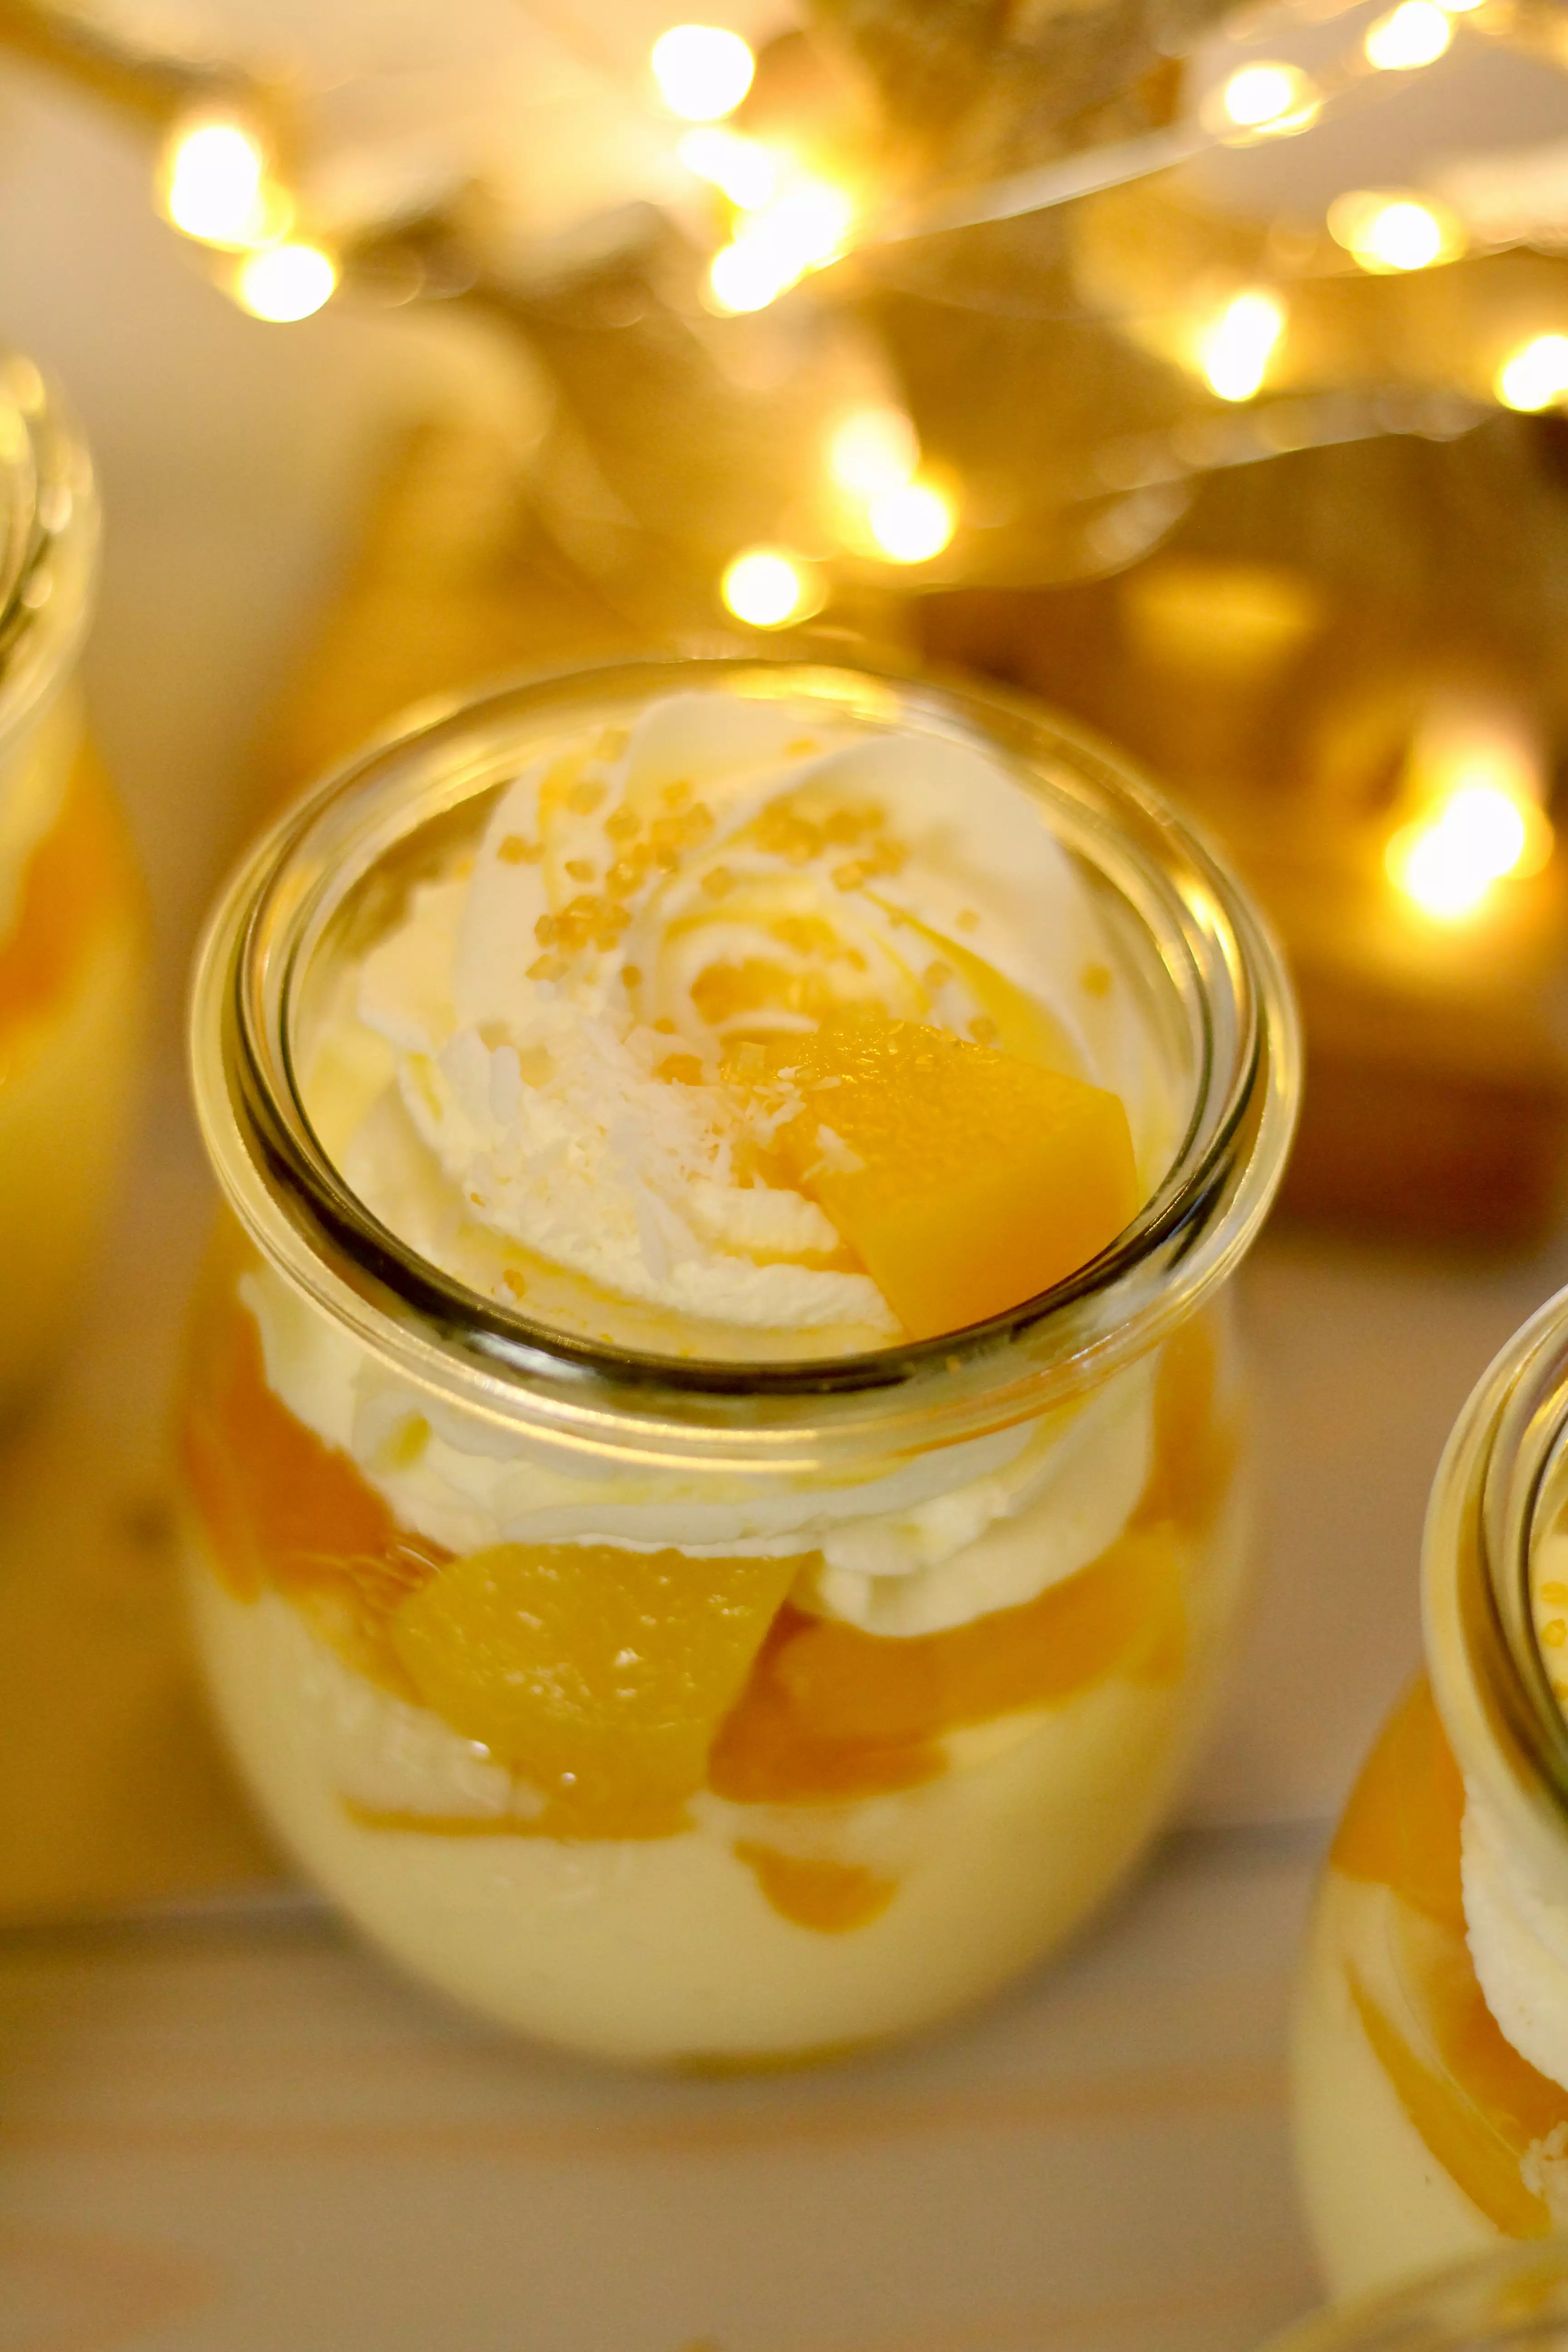 Himmlisch sahniges Pfirsich-Vanille-Dessert | Rezept von Sugarprincess | SCCC 2022 mit Gewinnspiel: Türchen Nr. 19